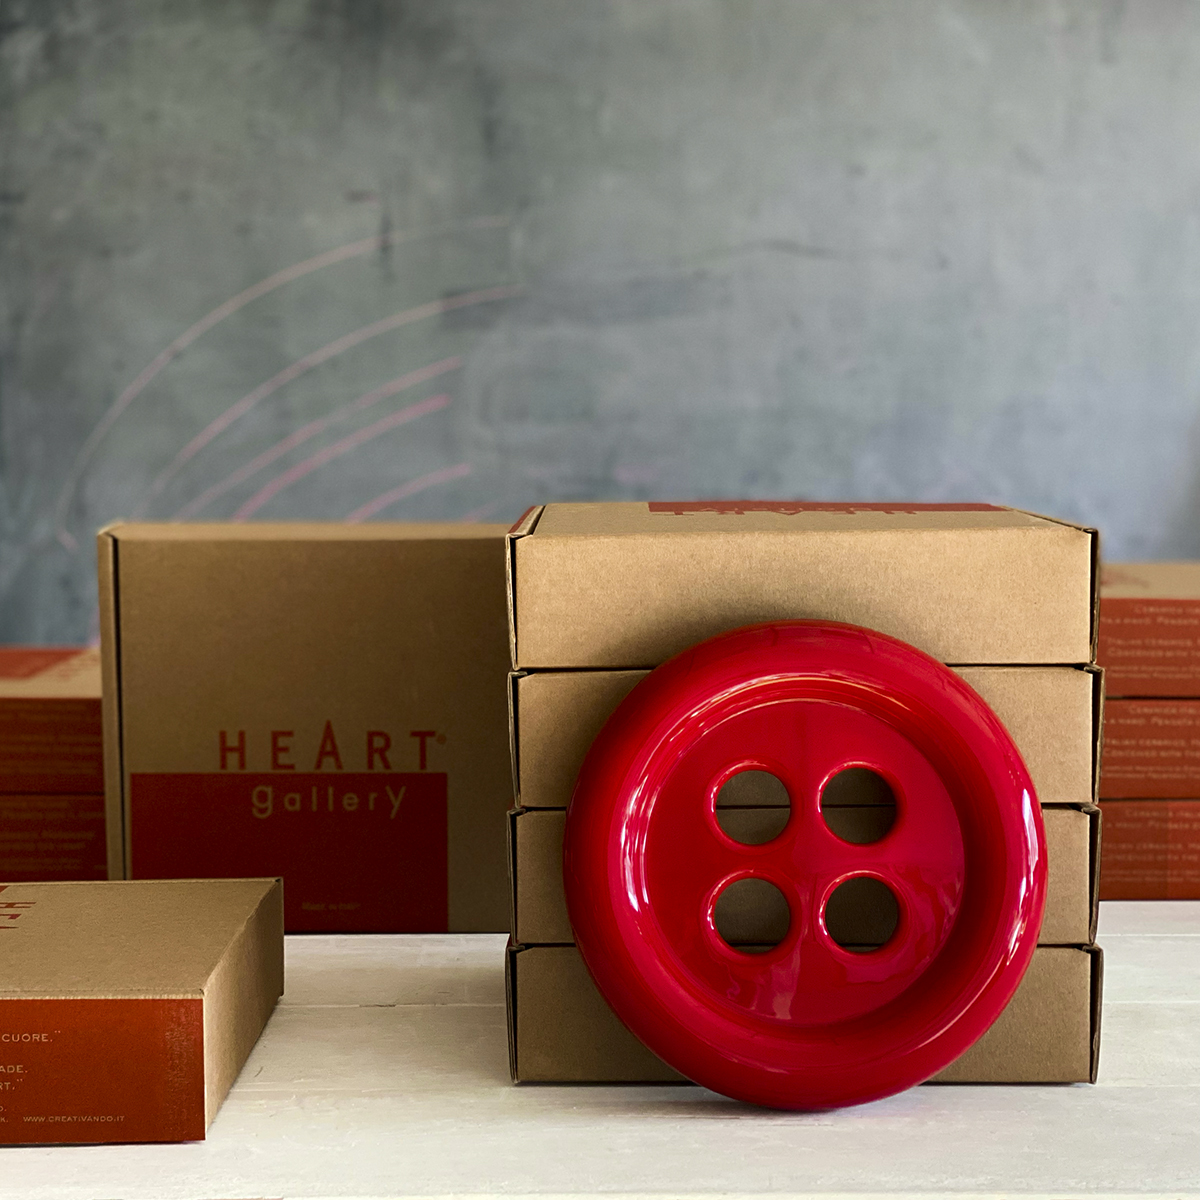 umidificatore in ceramica a forma di bottone rosso per radiatore è appoggiato sulle scatole della confezione.